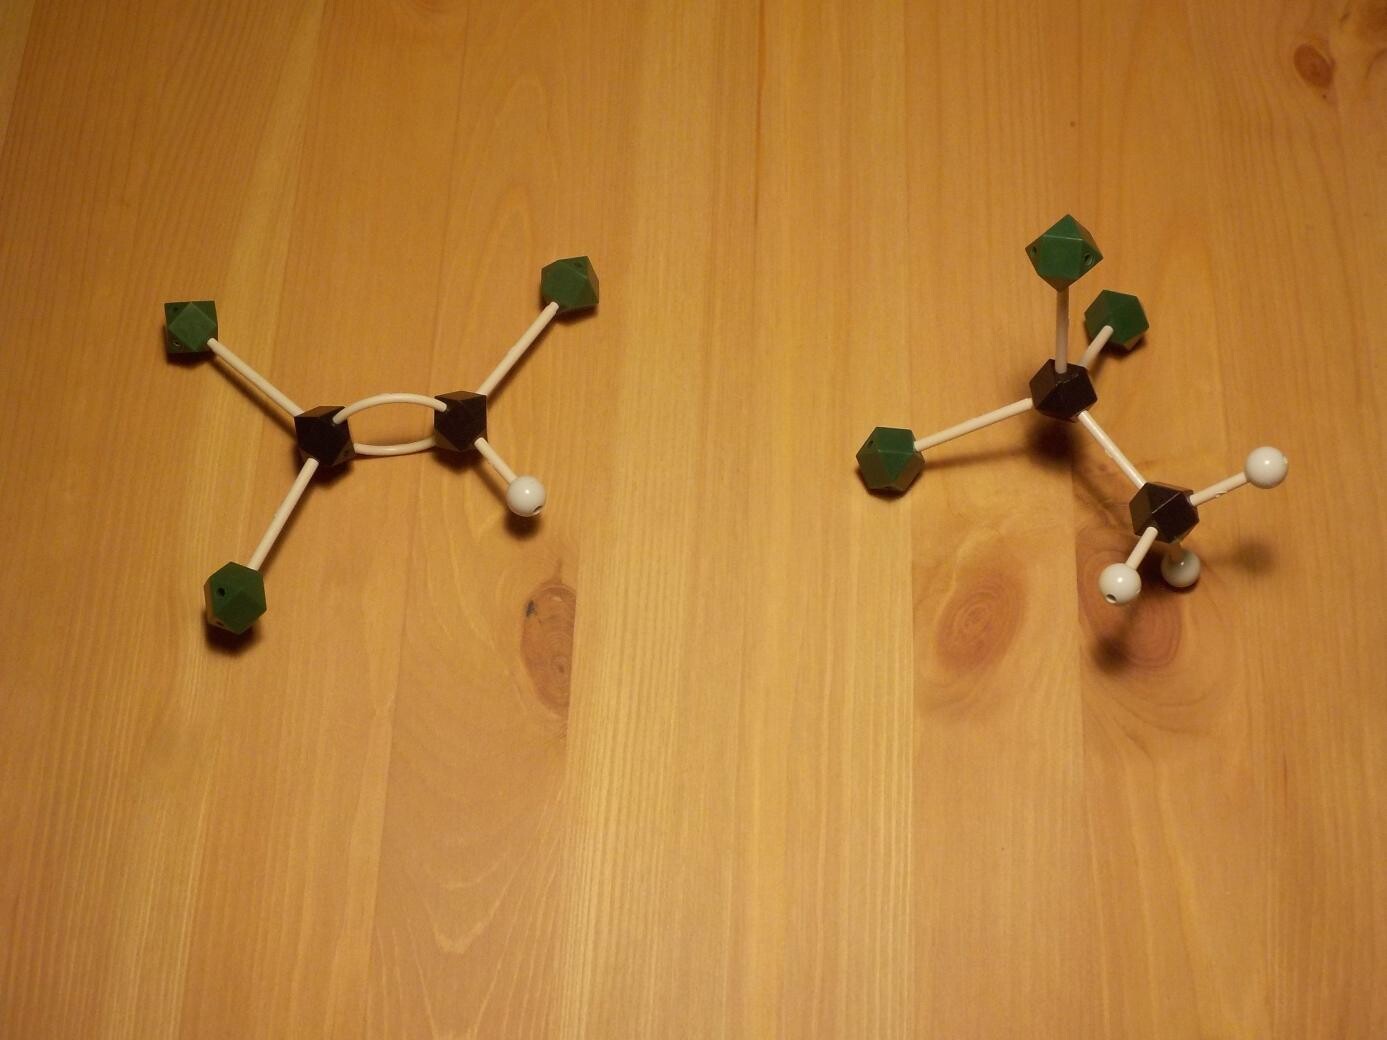 molecular models of trichloroethylene and 1,1,1-trichloroethane